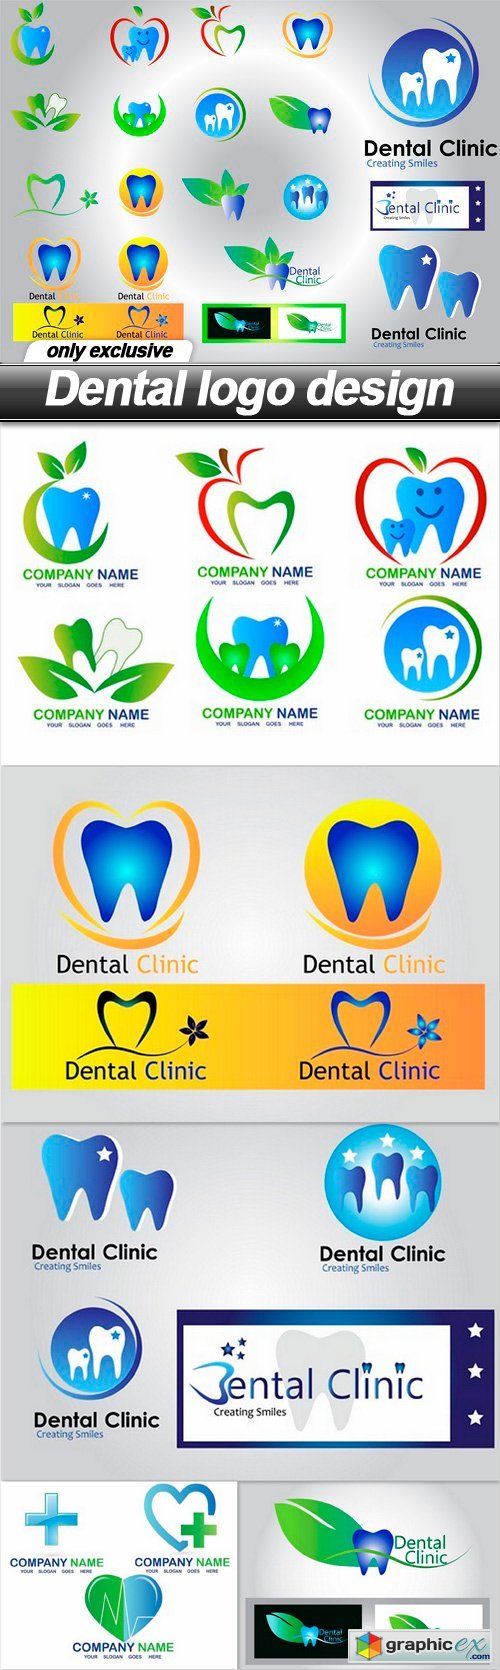 Dental logo design - 6 EPS